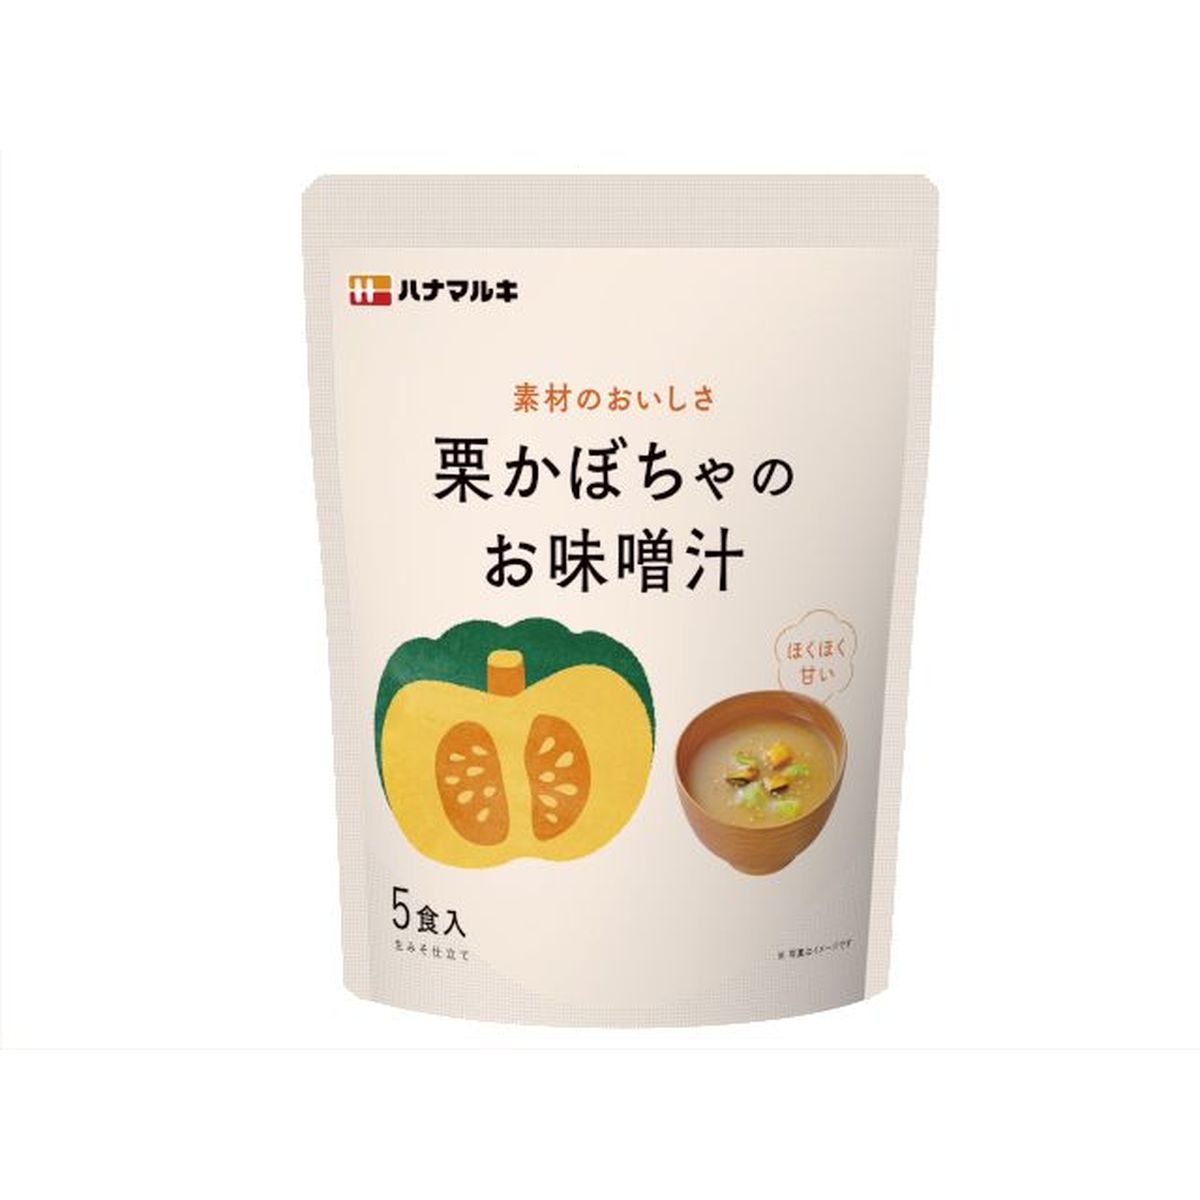 【8個入リ】ハナマルキ 栗カボチャノオ味噌汁 5食